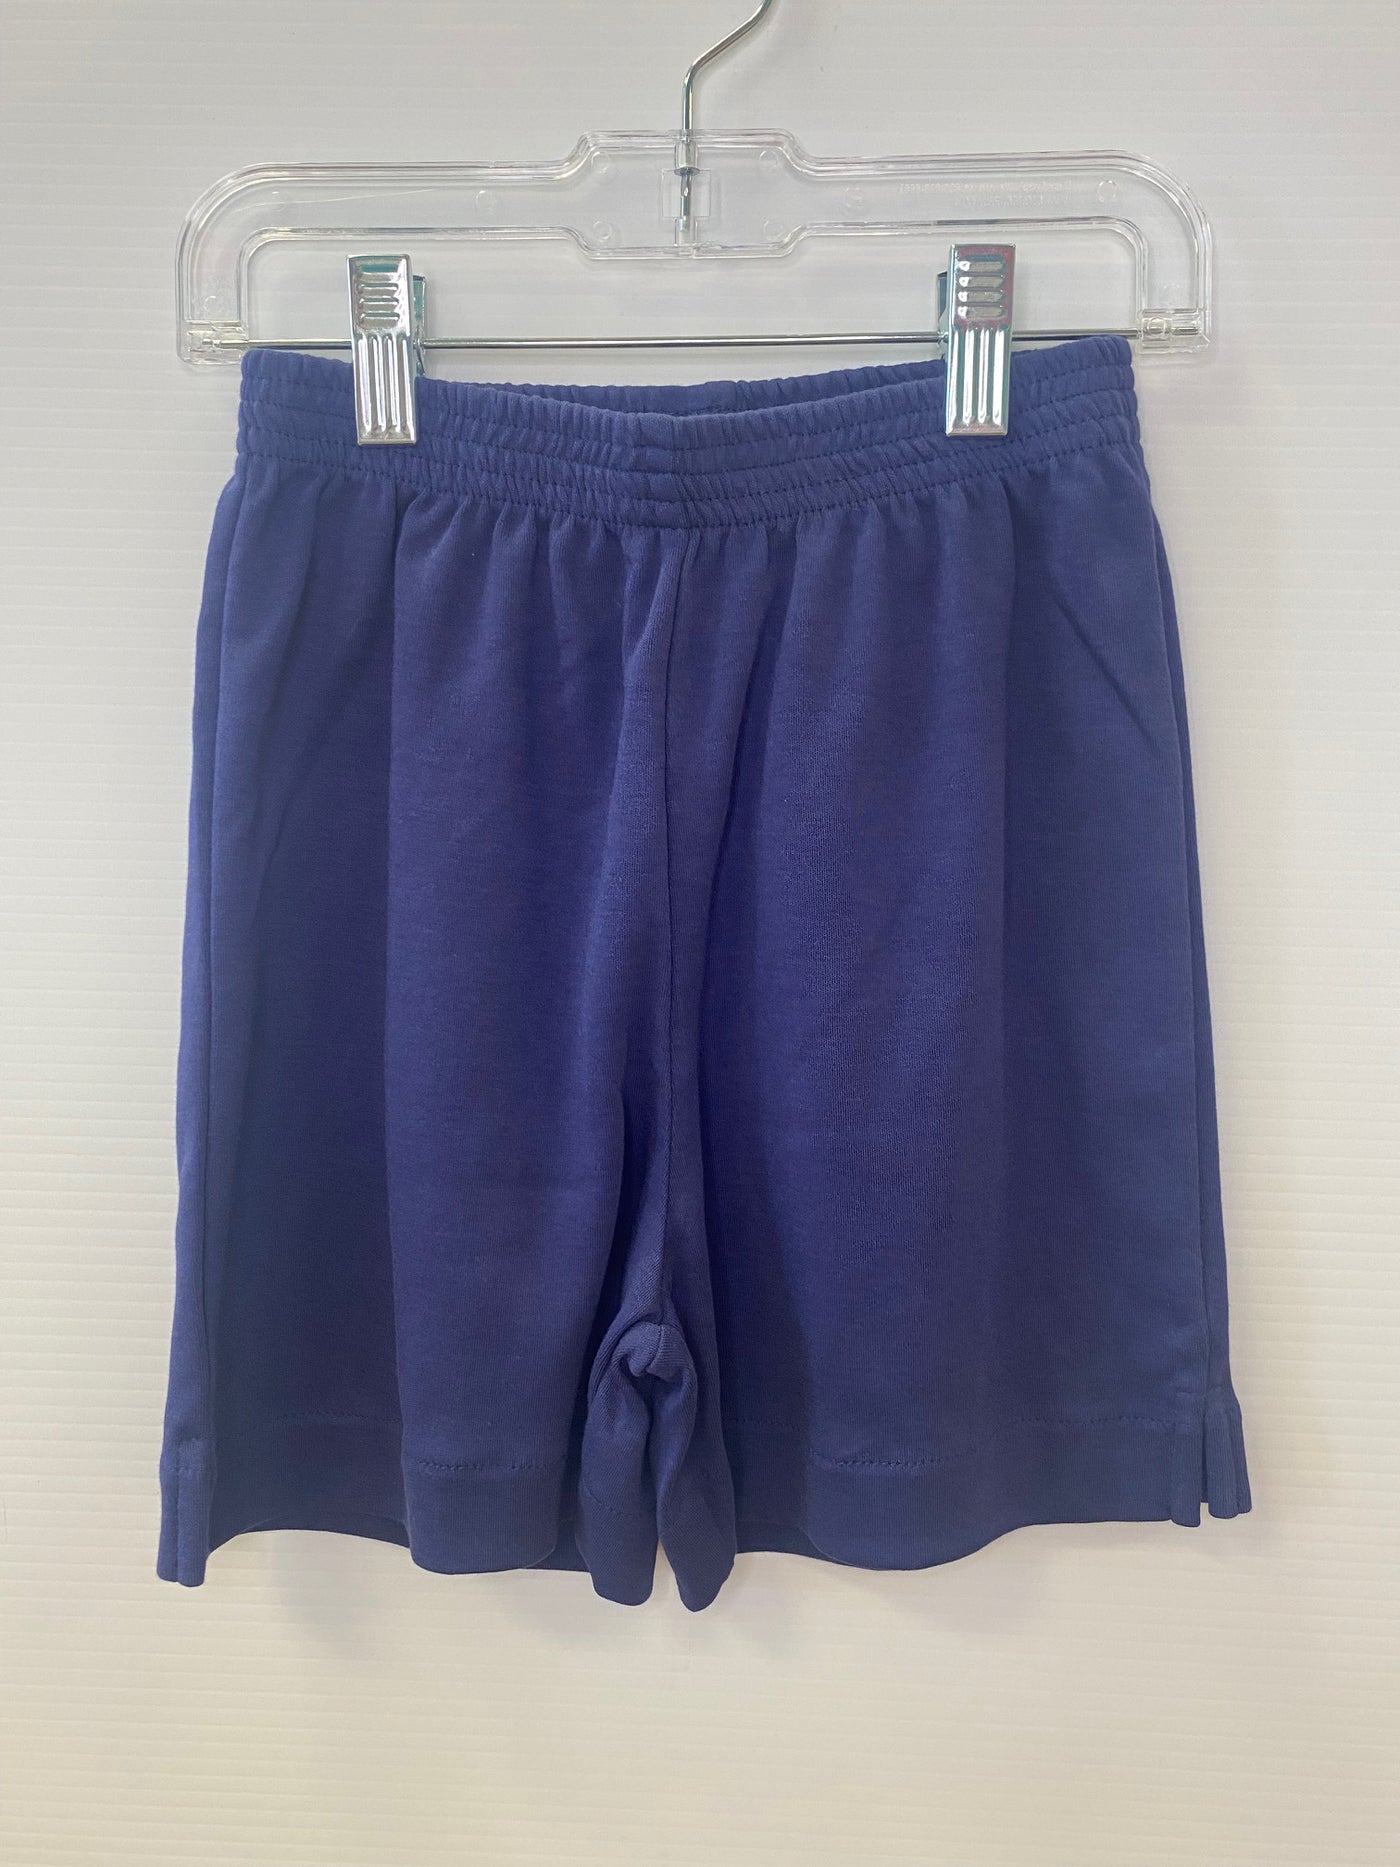 Shorts-dark royal blue